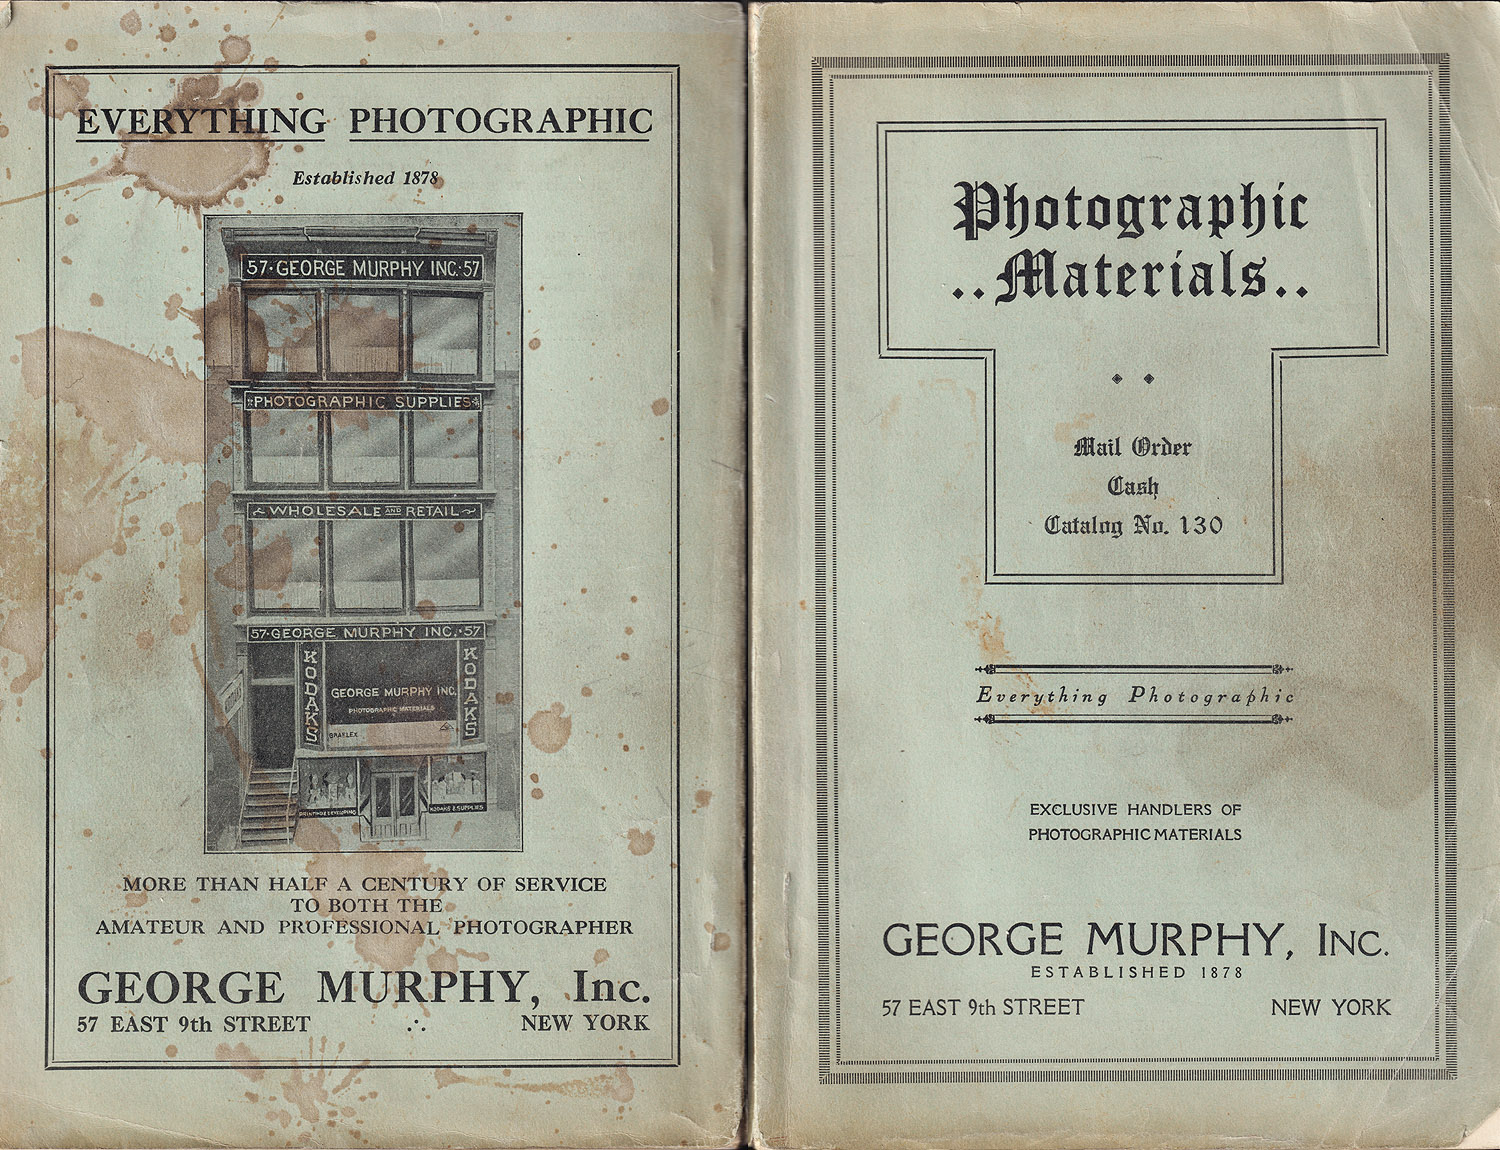 1137.george.murphy.1930-covers-1500.jpg